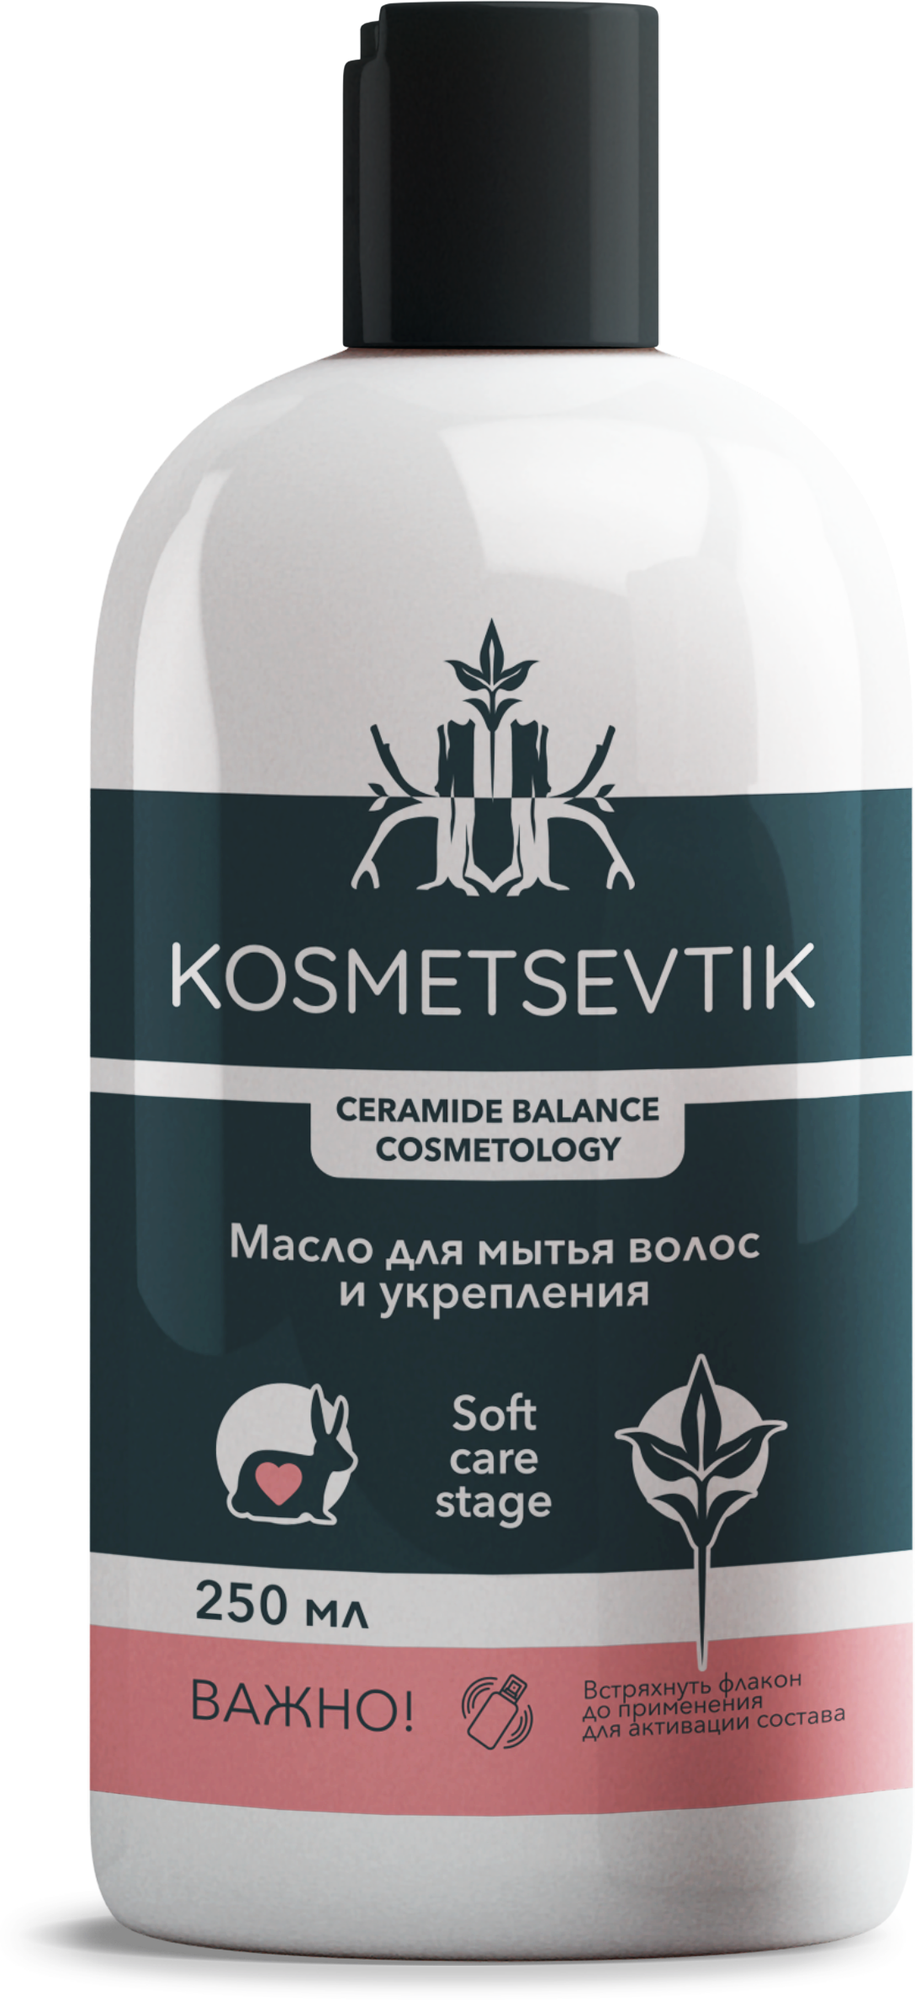 Kosmetsevtik / Масло для мытья волос и укрепления, 250 мл, для женщин и мужчин.